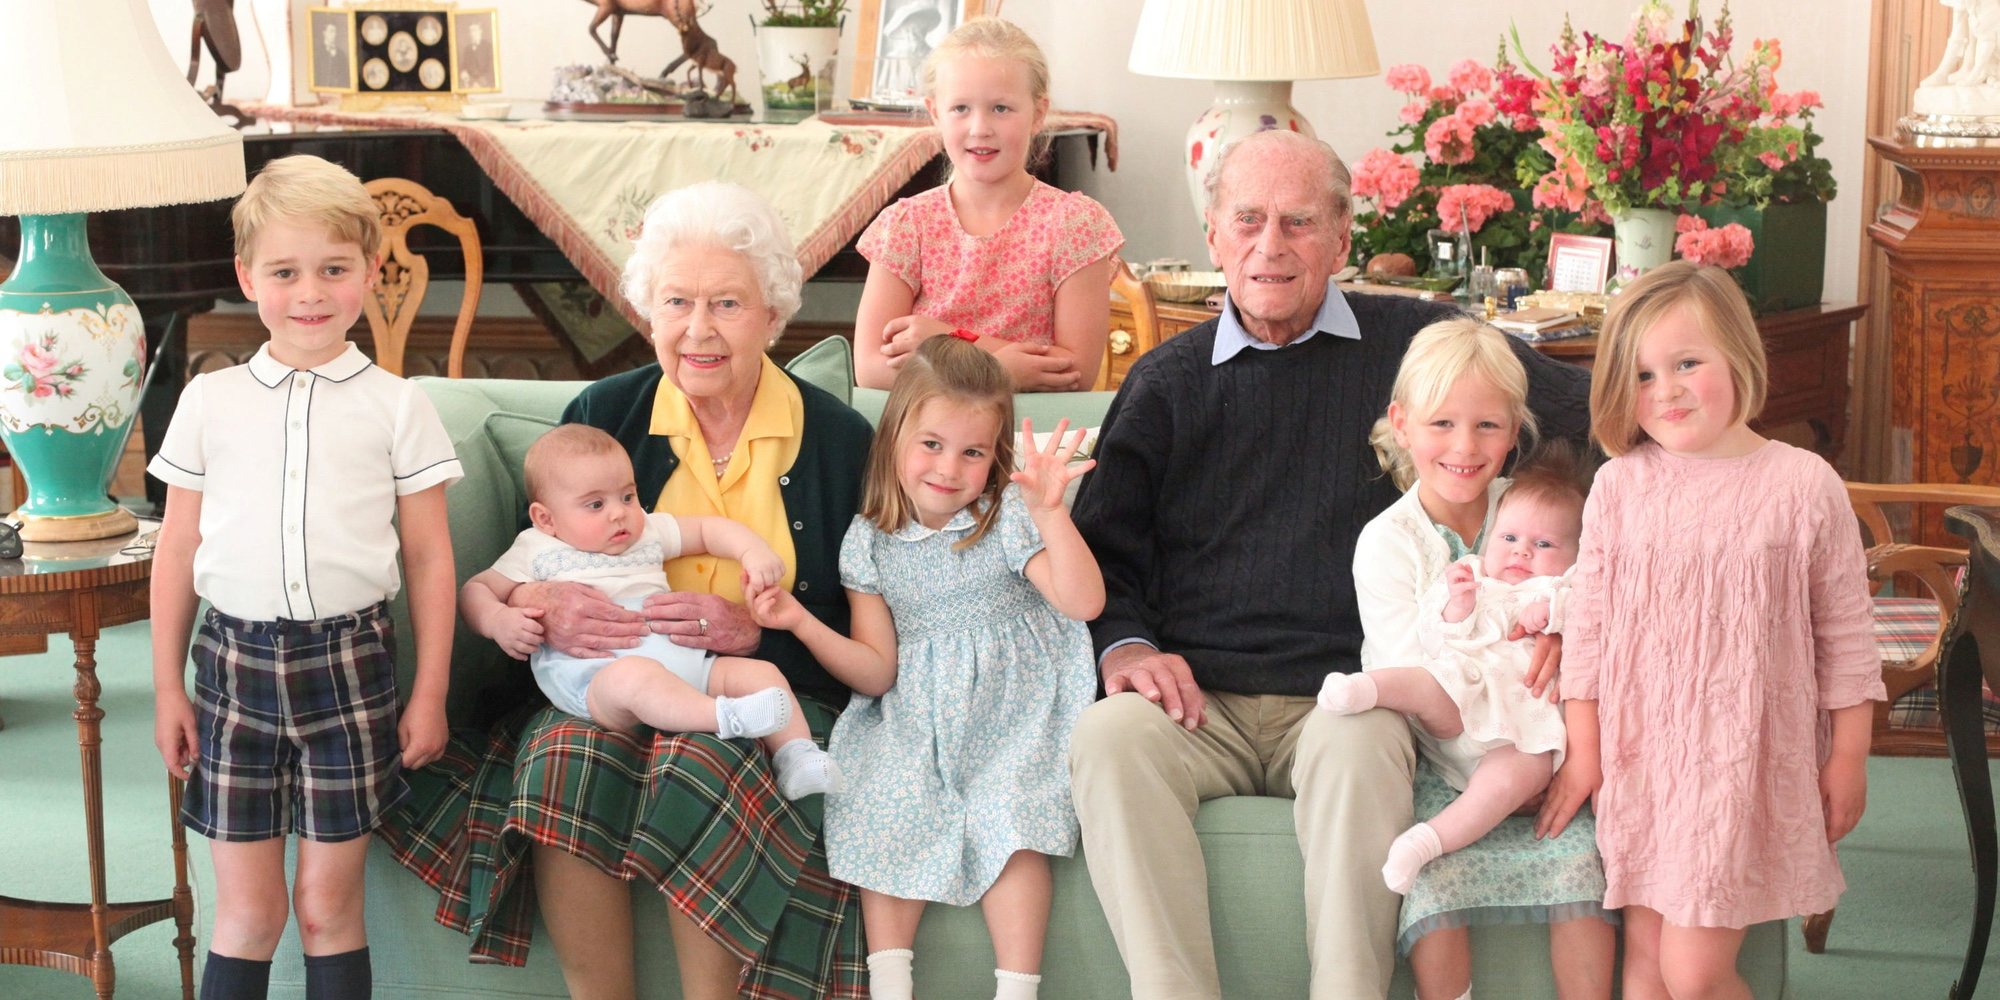 La Familia Real rinde homenaje al Duque de Edimburgo mostrando su lado tierno como bisabuelo